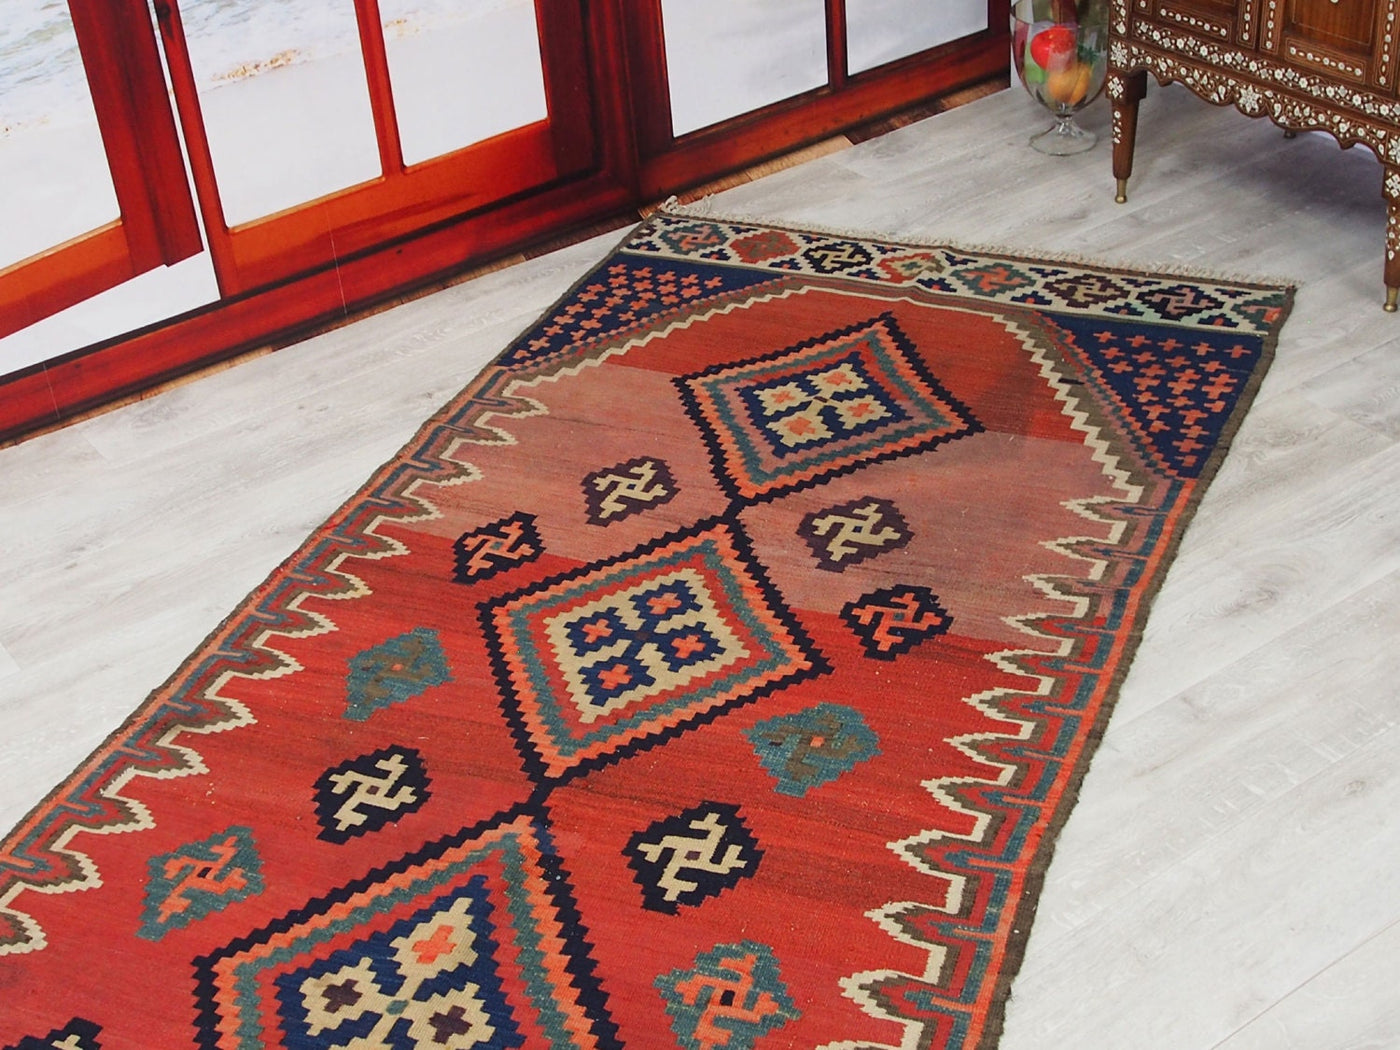 382x118 cm sehr seltener antike orient Teppich  nomaden Kelim ardabil  Teppich Rug  Nr:330  Orientsbazar   